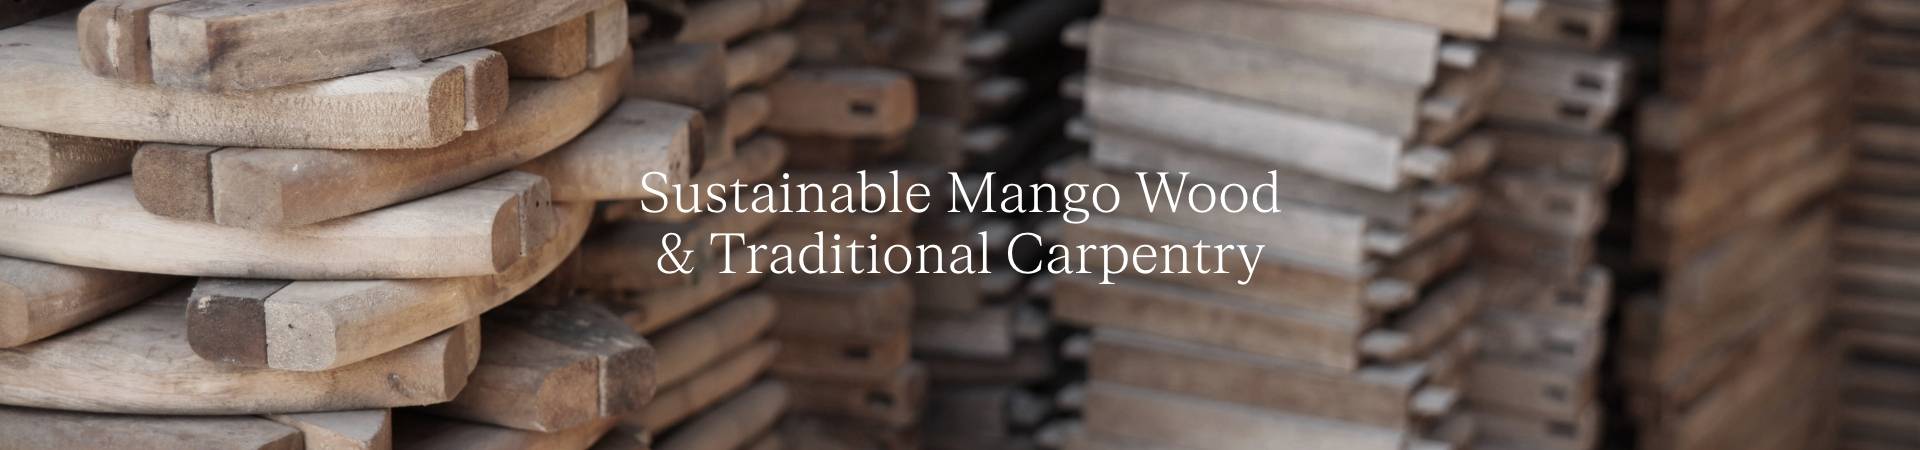 Sustainable Mango Wood.jpg